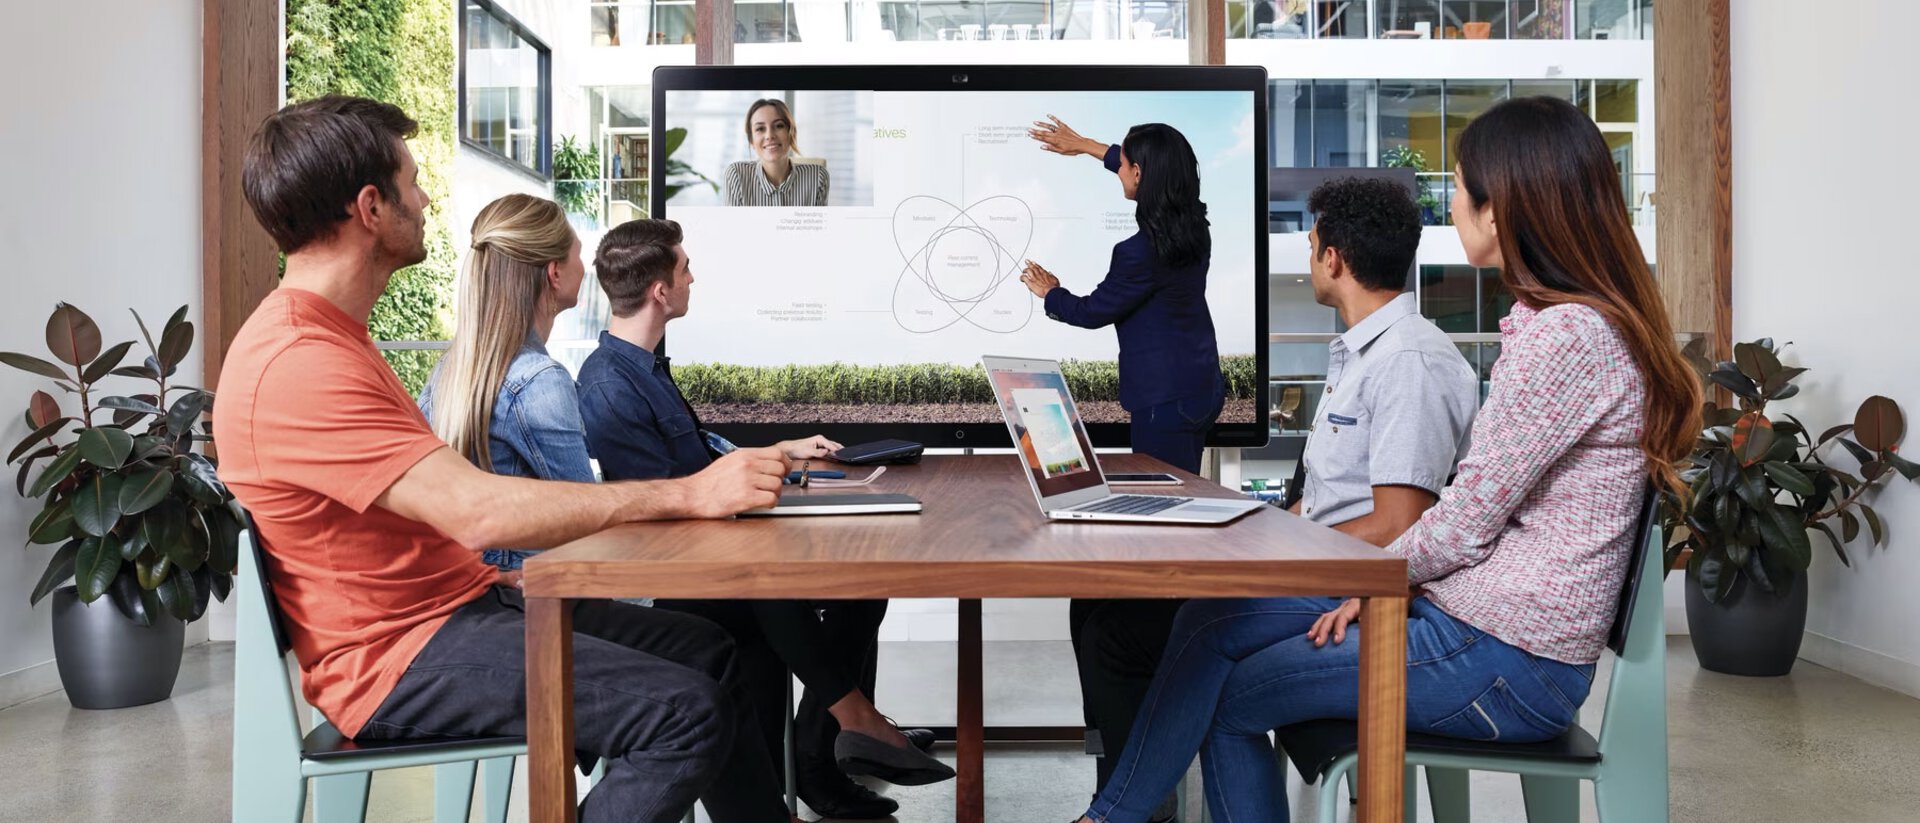 Fünf Personen sitzen an einem großen Tisch im Hybriden Meeting, eine Person zeigt etwas am Bildschirm, eine Person nimmt virtuell teil